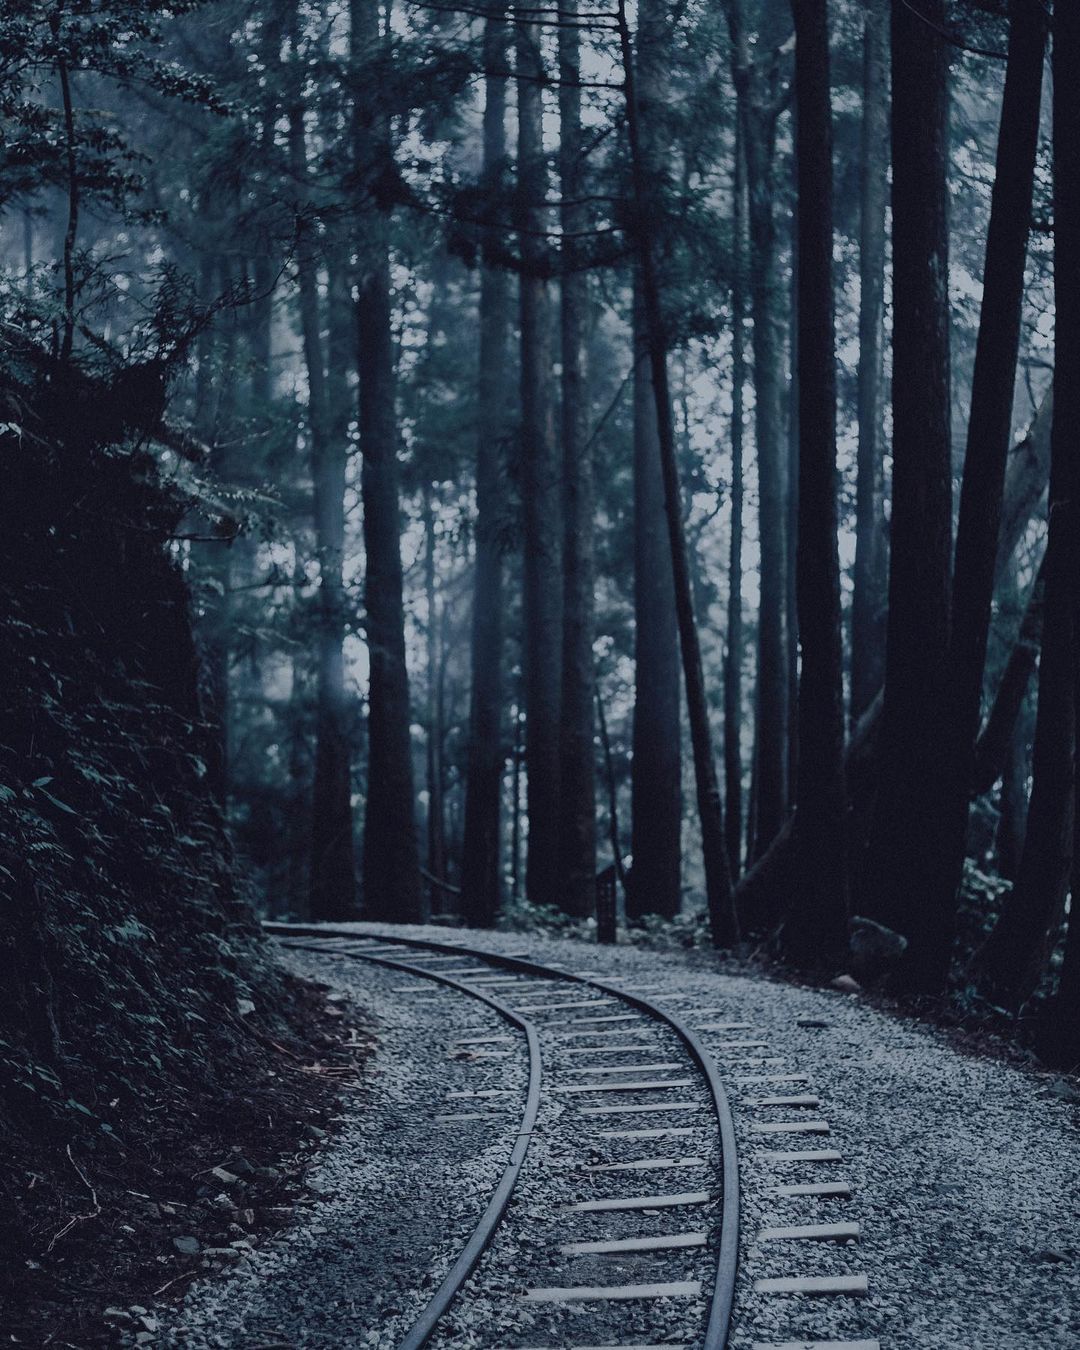 廢棄的鐵軌，曾經是運送珍貴木材的路徑，也是與"鄒"緊緊相連的獵徑，不只是拍照的森林秘境，生態、過往、故事都是蘊藏在古道裡的魅力。照...